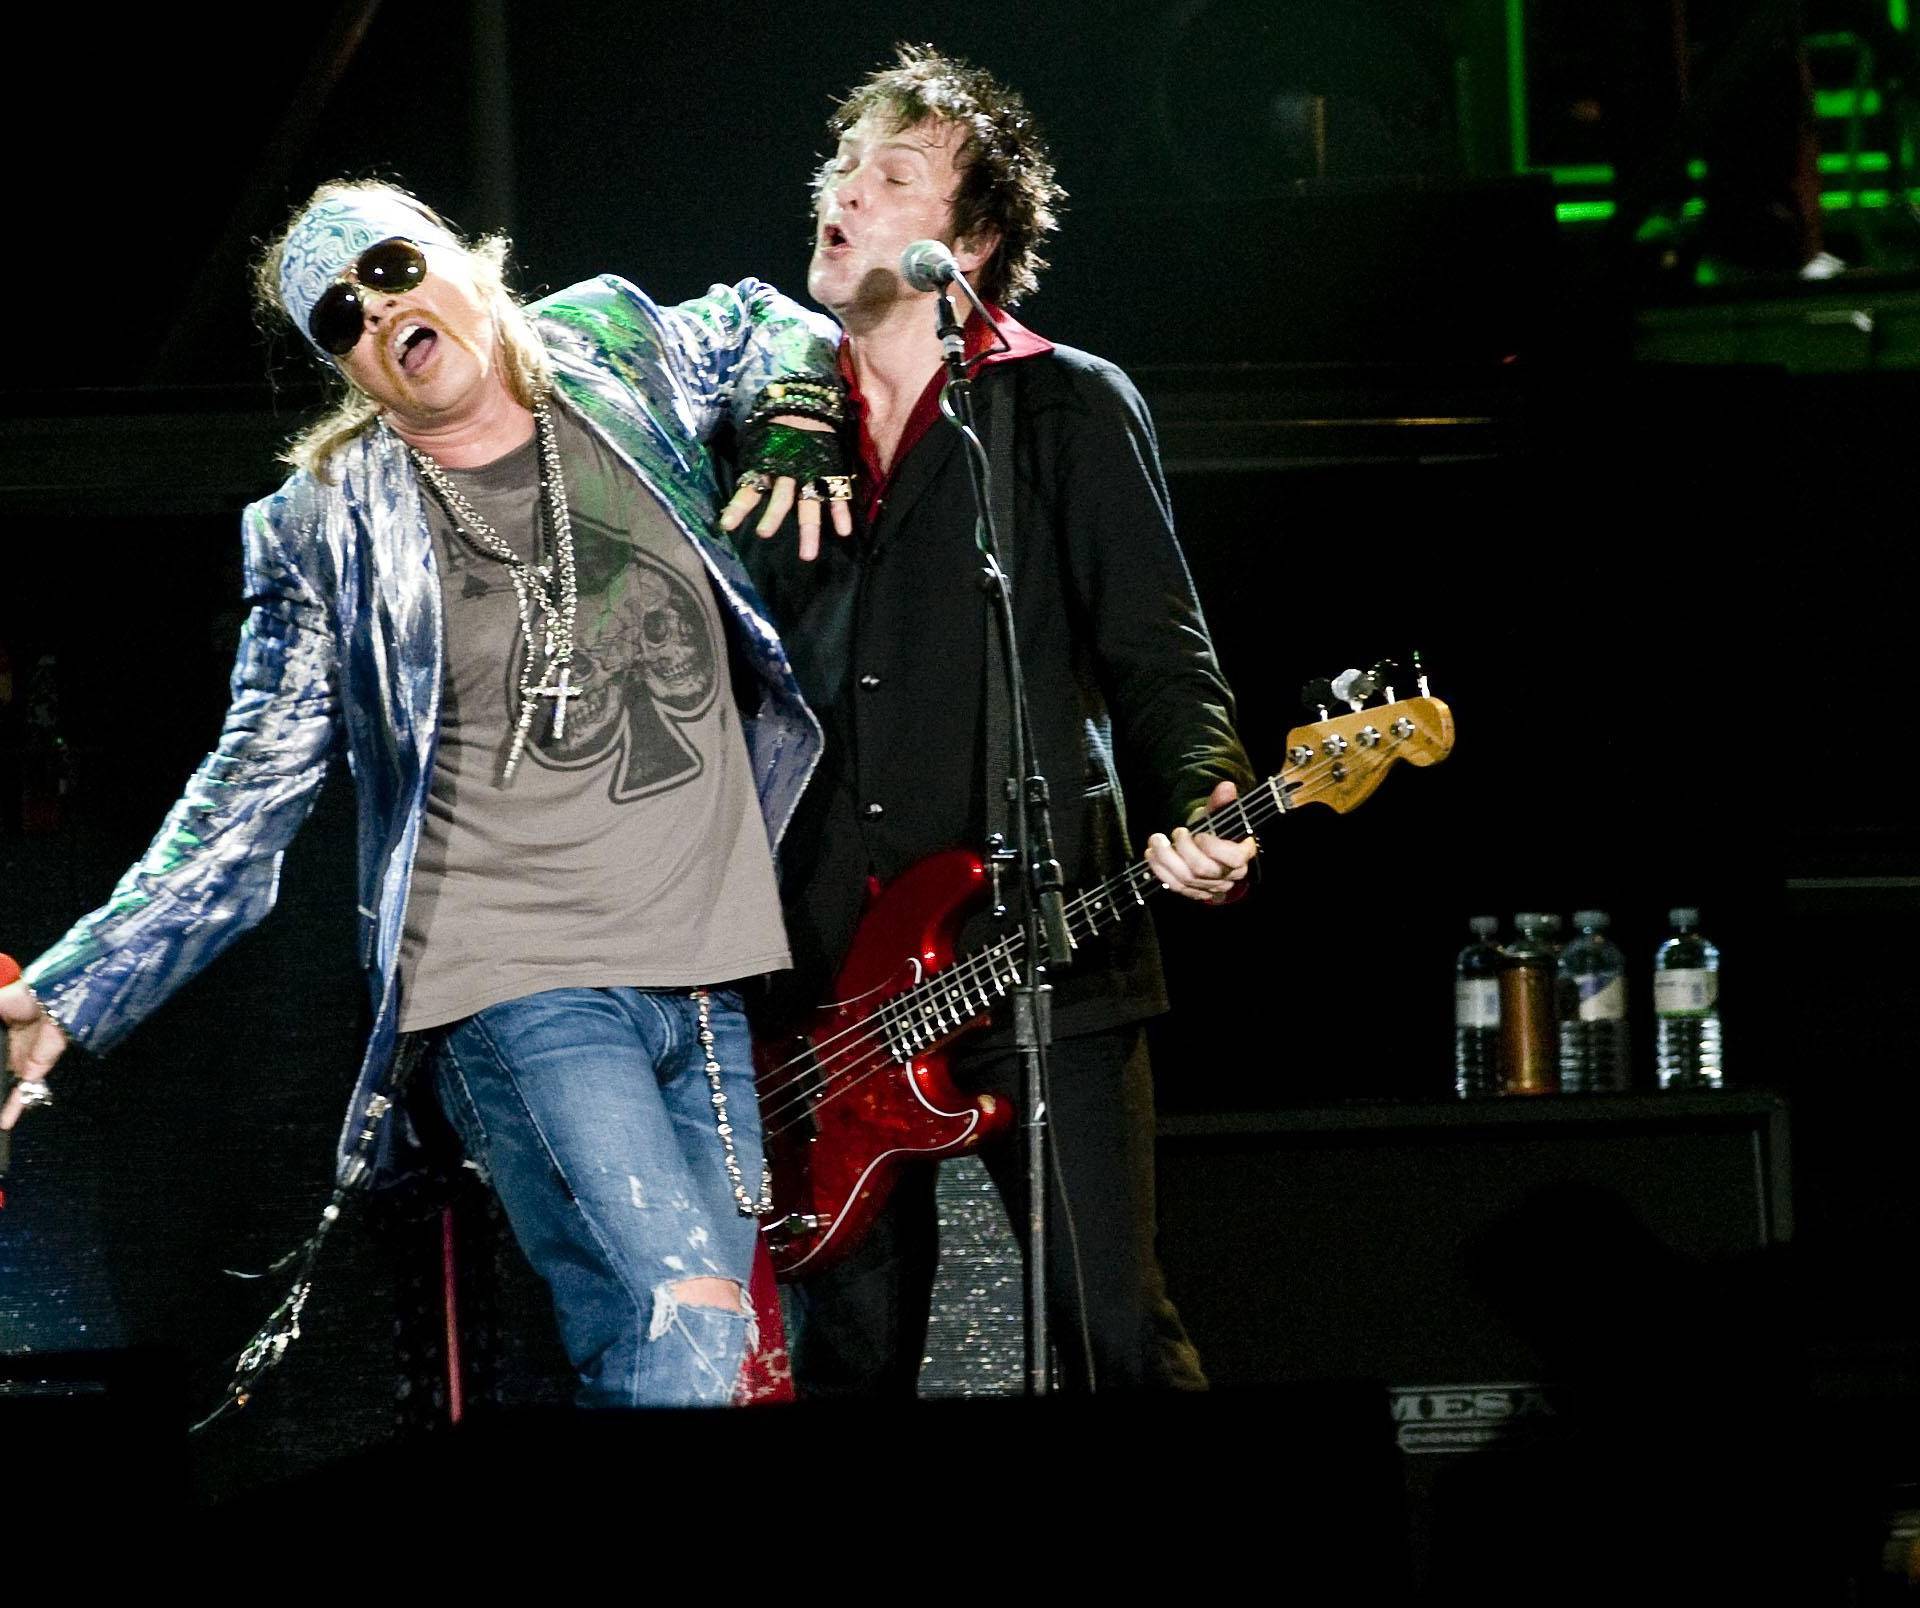 Guns N' Roses perform at the O2